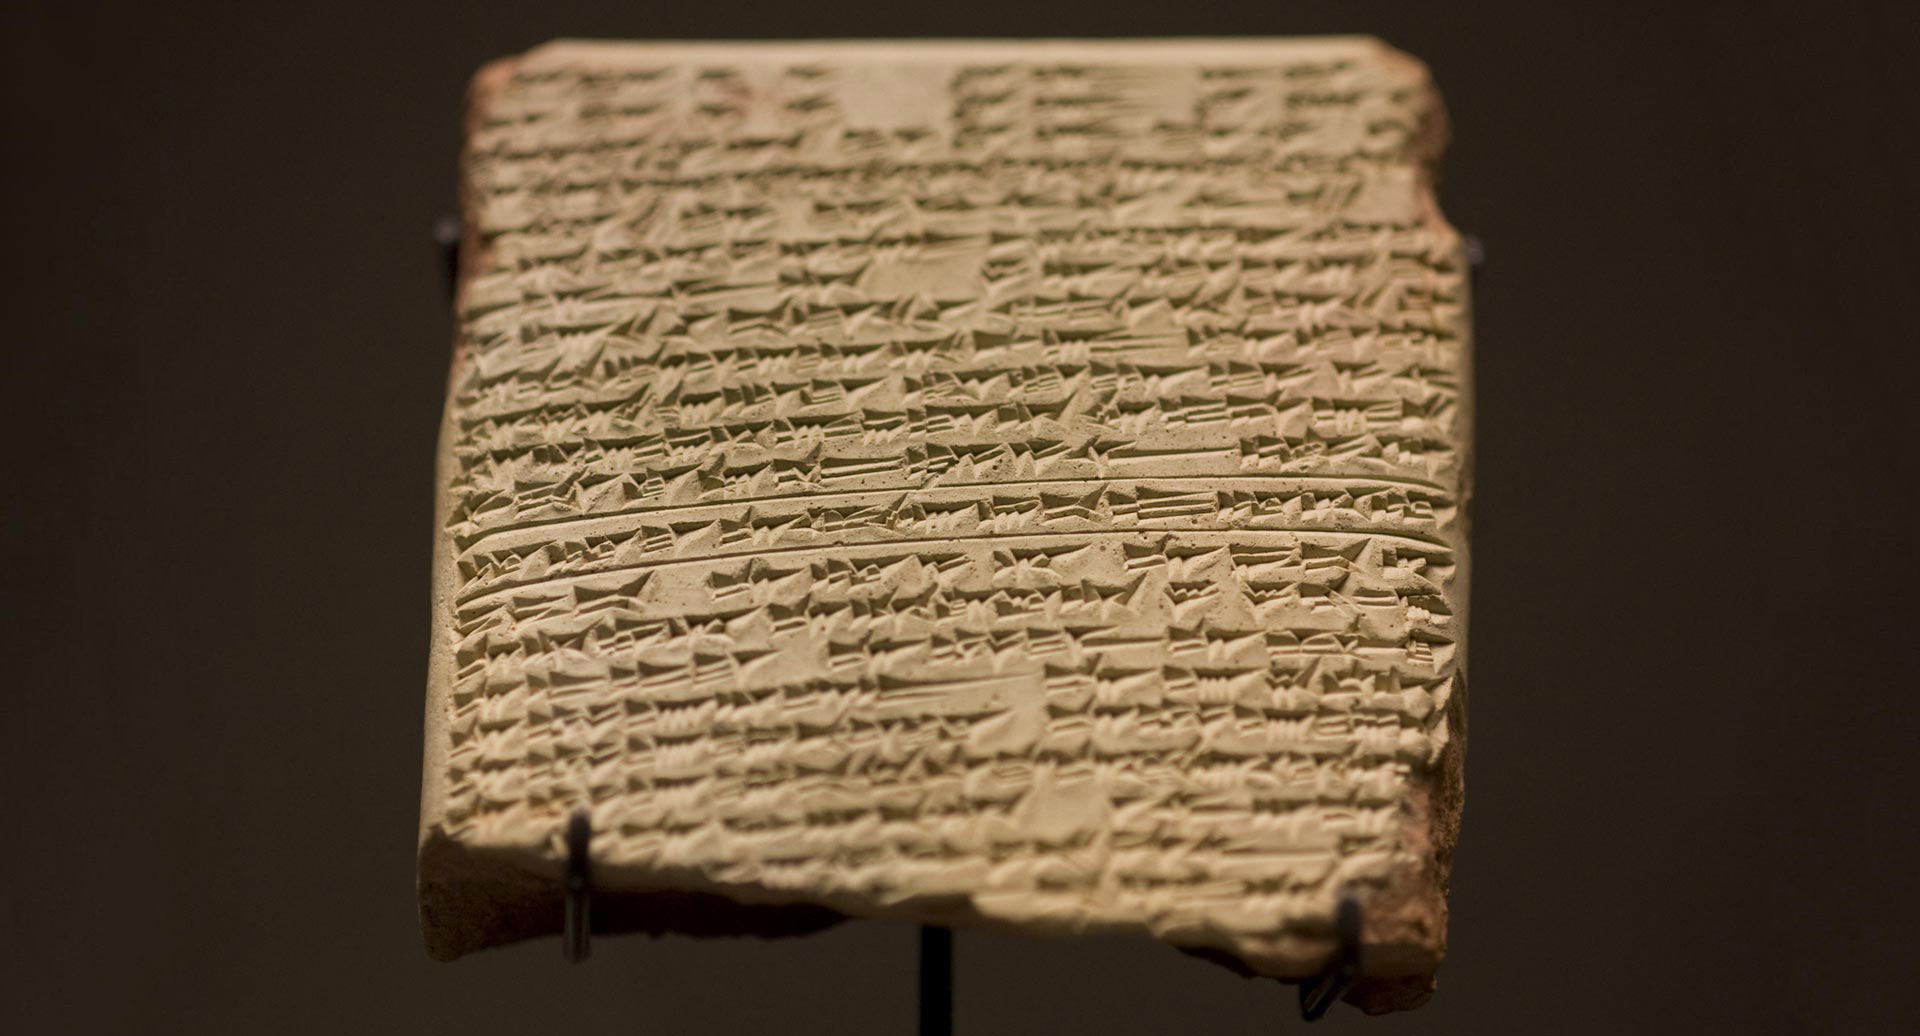 Cuneiform Script Clay Tablet in Museum